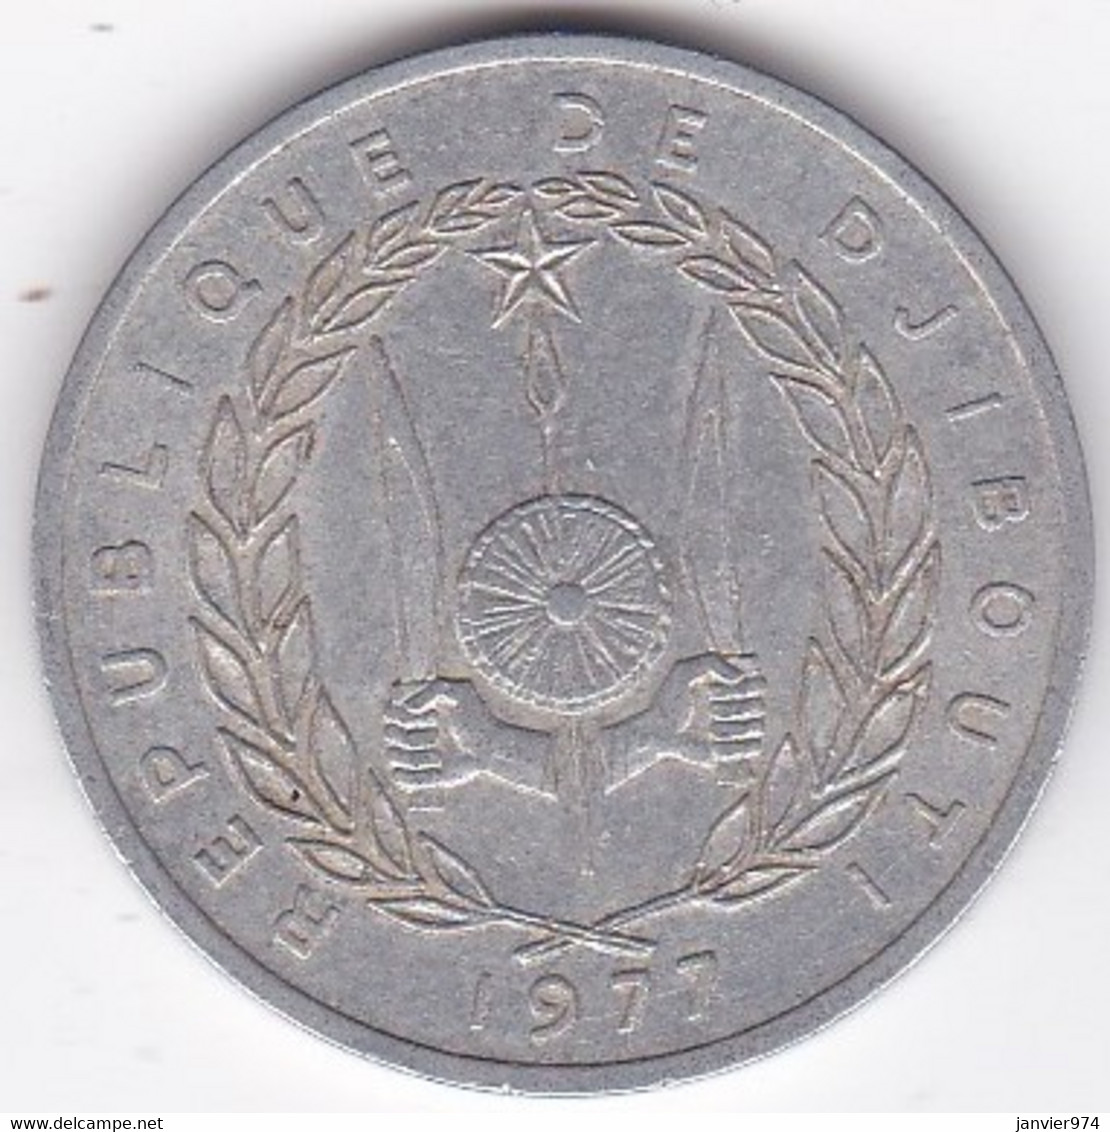 République De Djibouti 5 Francs 1977, En Aluminium , KM# 22 - Gibuti